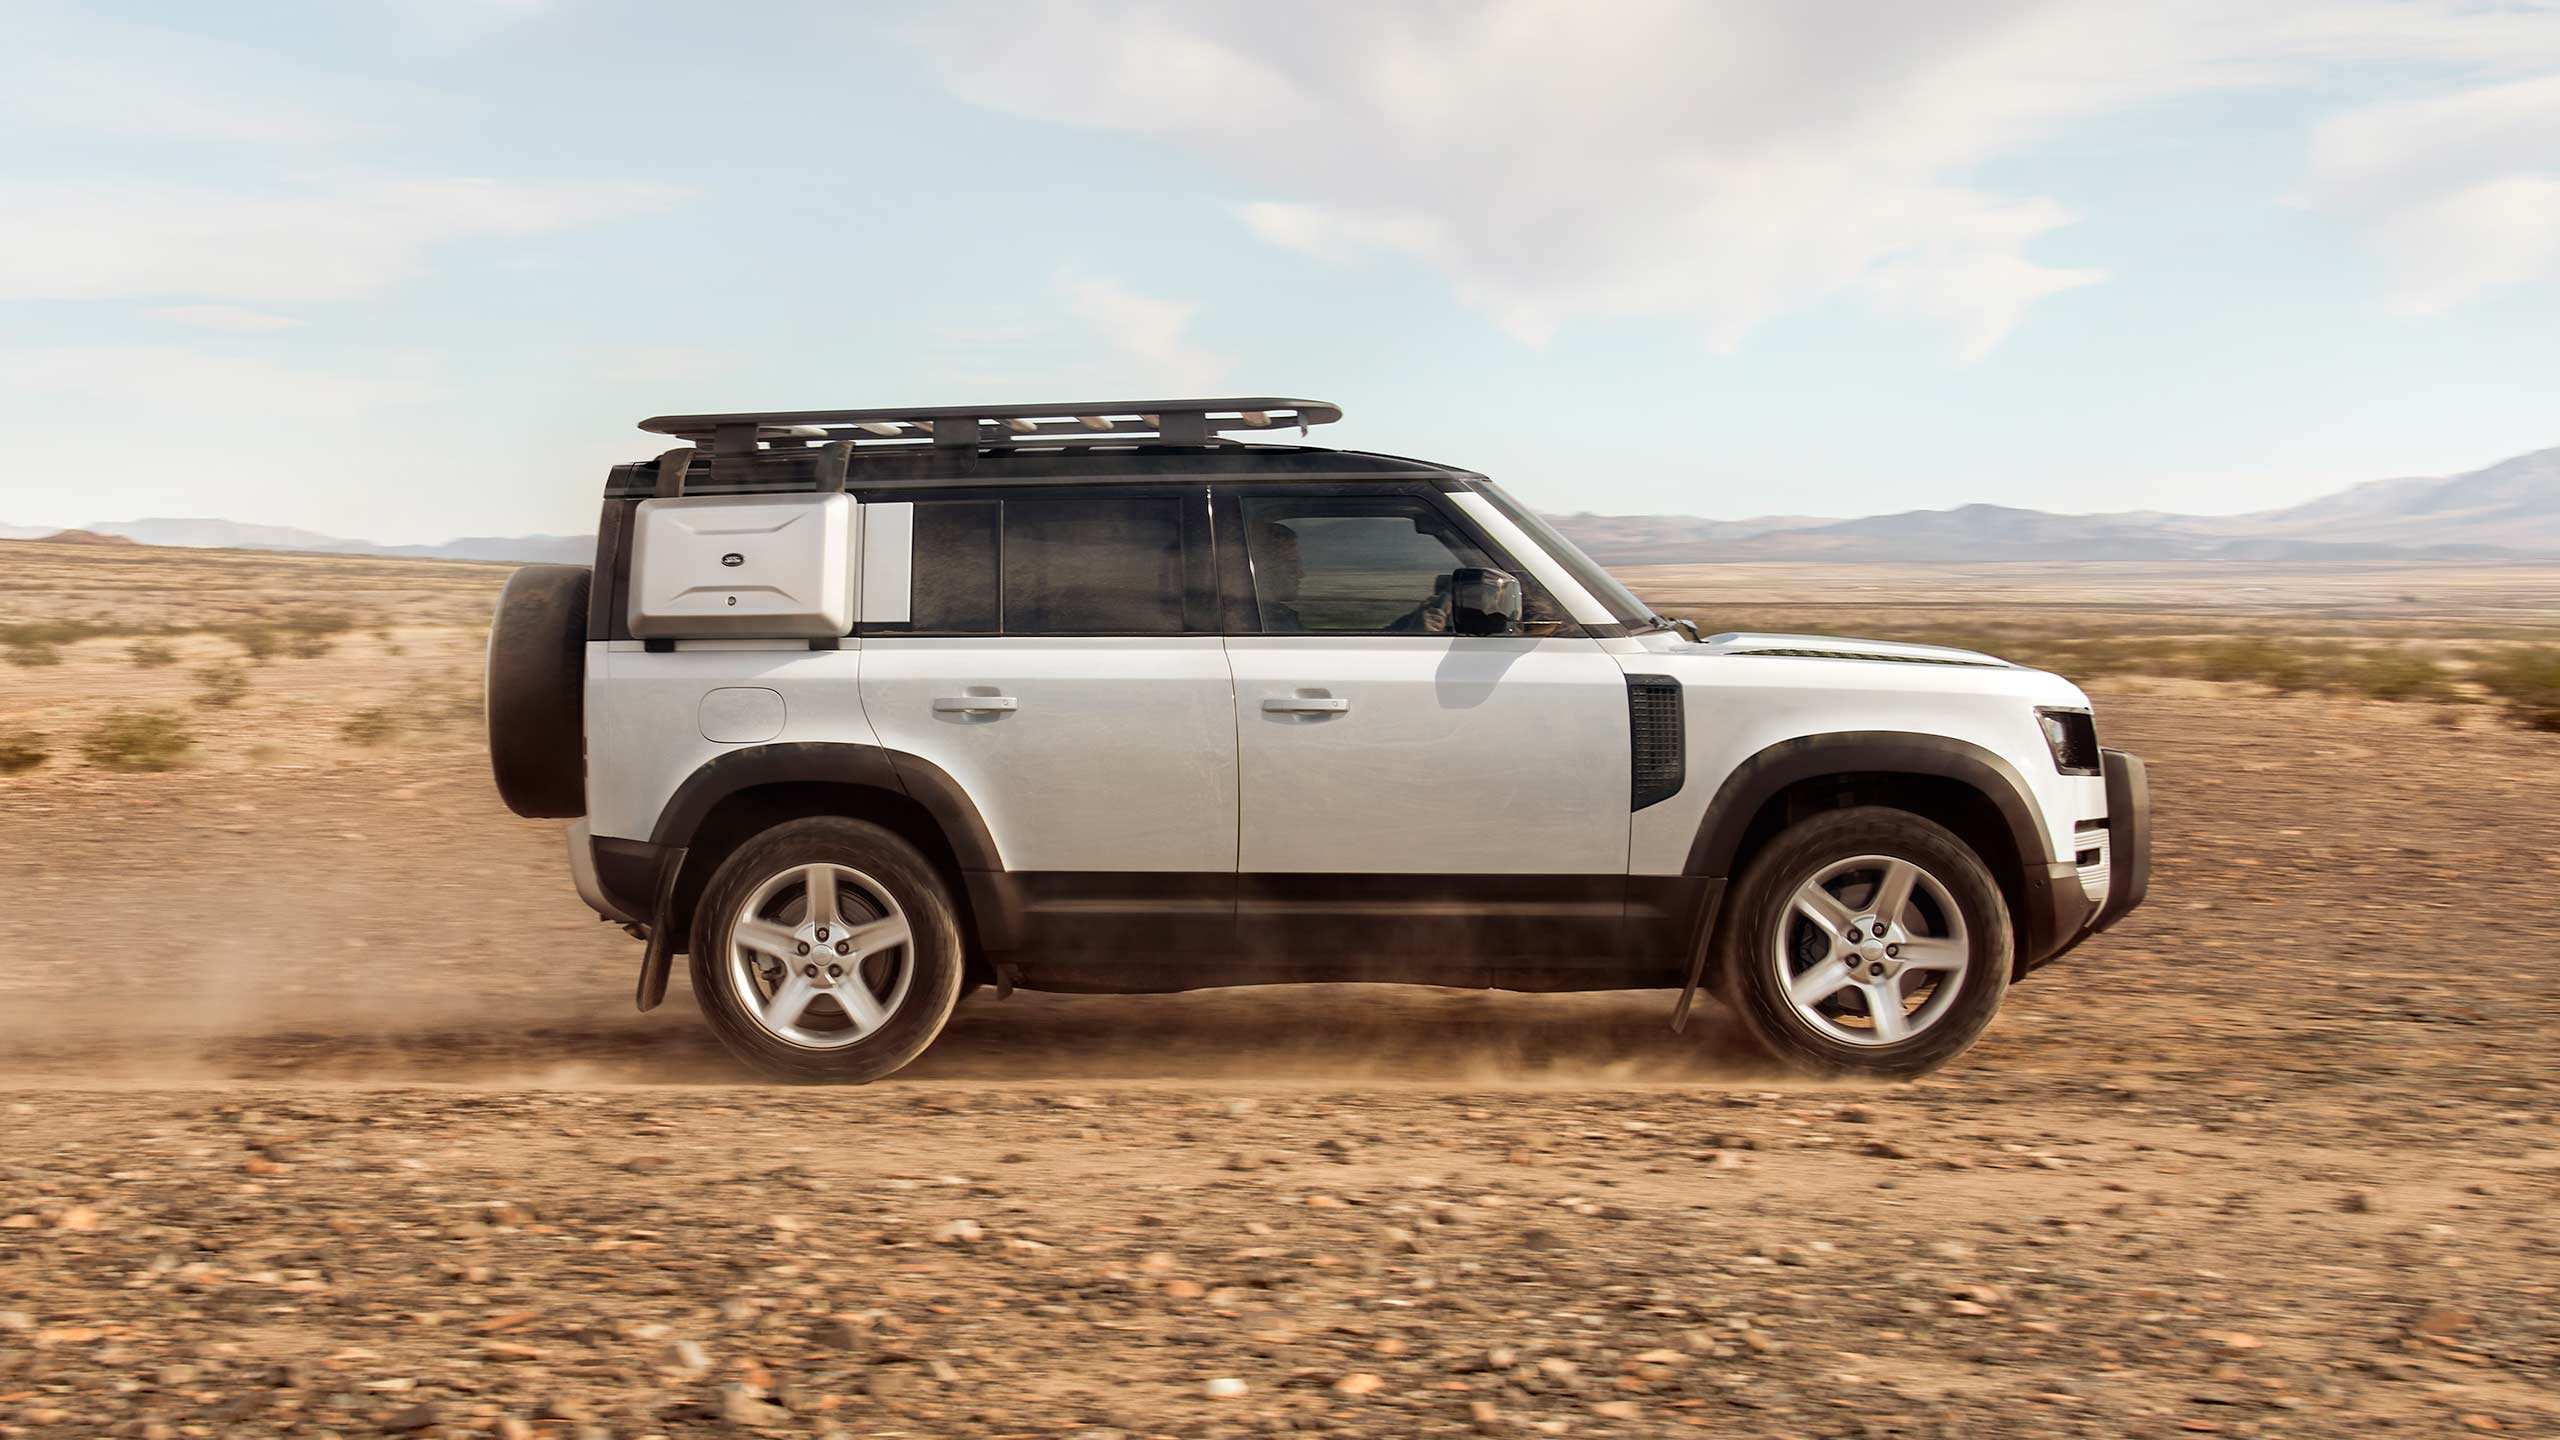 Range Rover Defender in desert